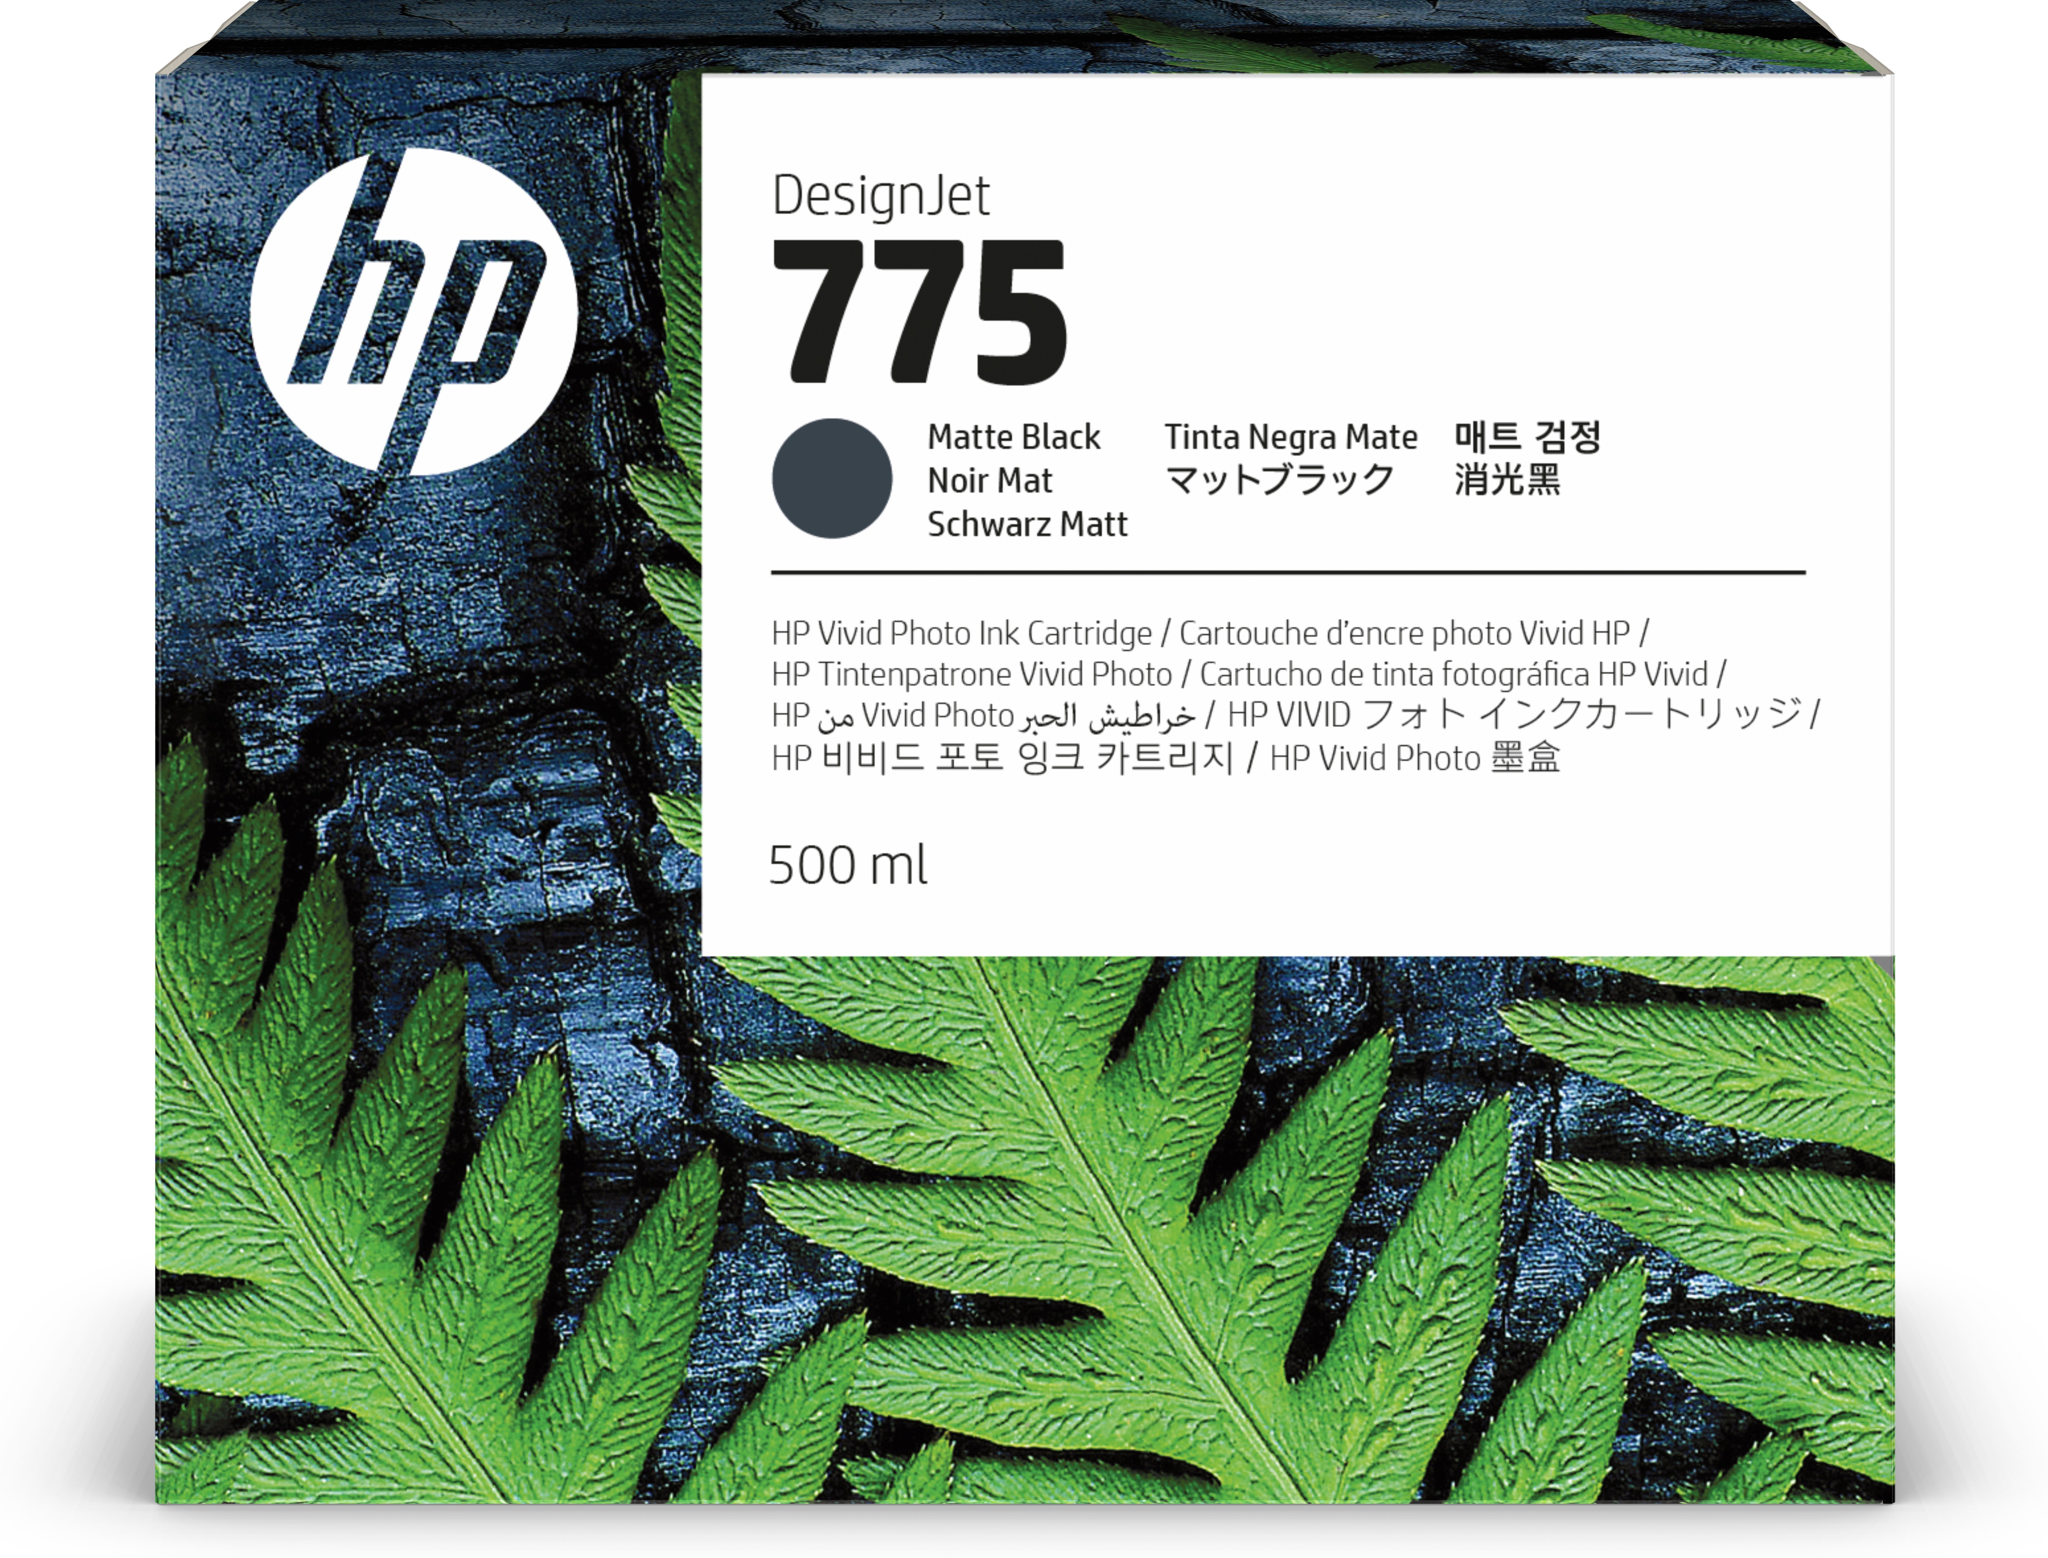 Bild von HP 775 Schwarz matt Druckerpatrone - 500 ml - Standardertrag - 500 ml - 1 Stück(e) - Einzelpackung